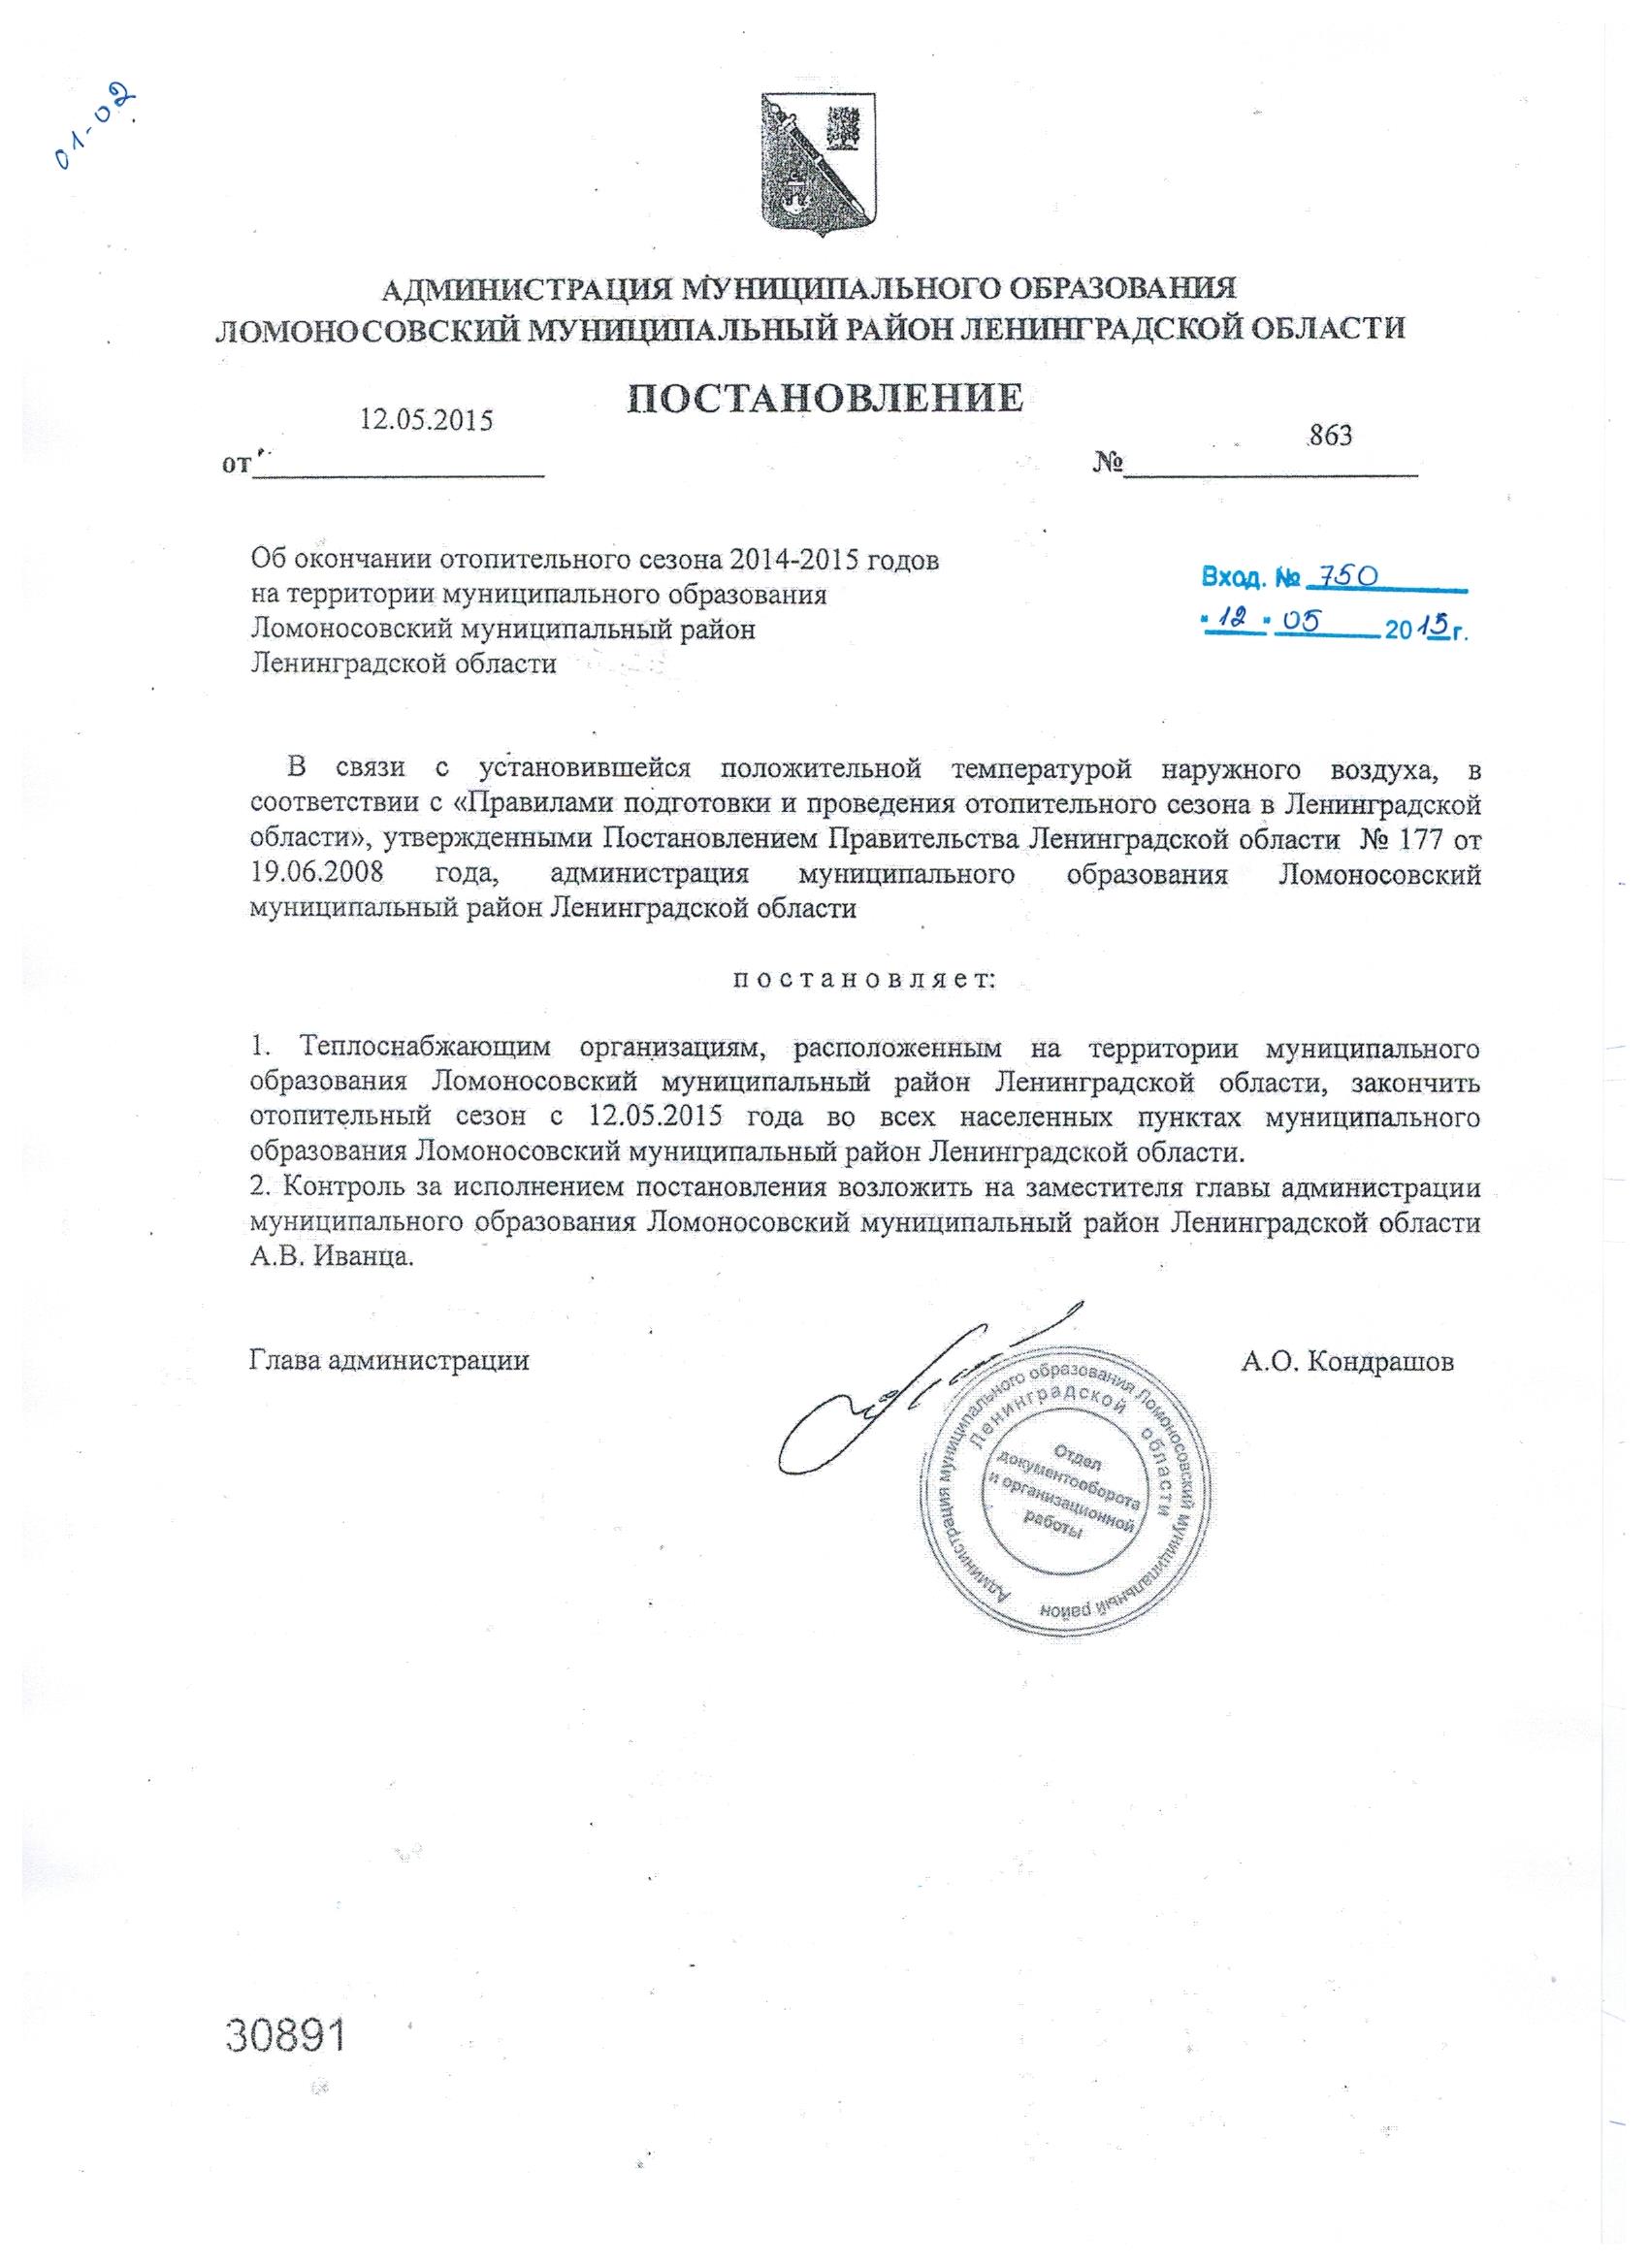 Об окончании отопительного сезона 2014-2015 годов на территории муниципального образования Ломоносовский муниципальный район Ленинградской области